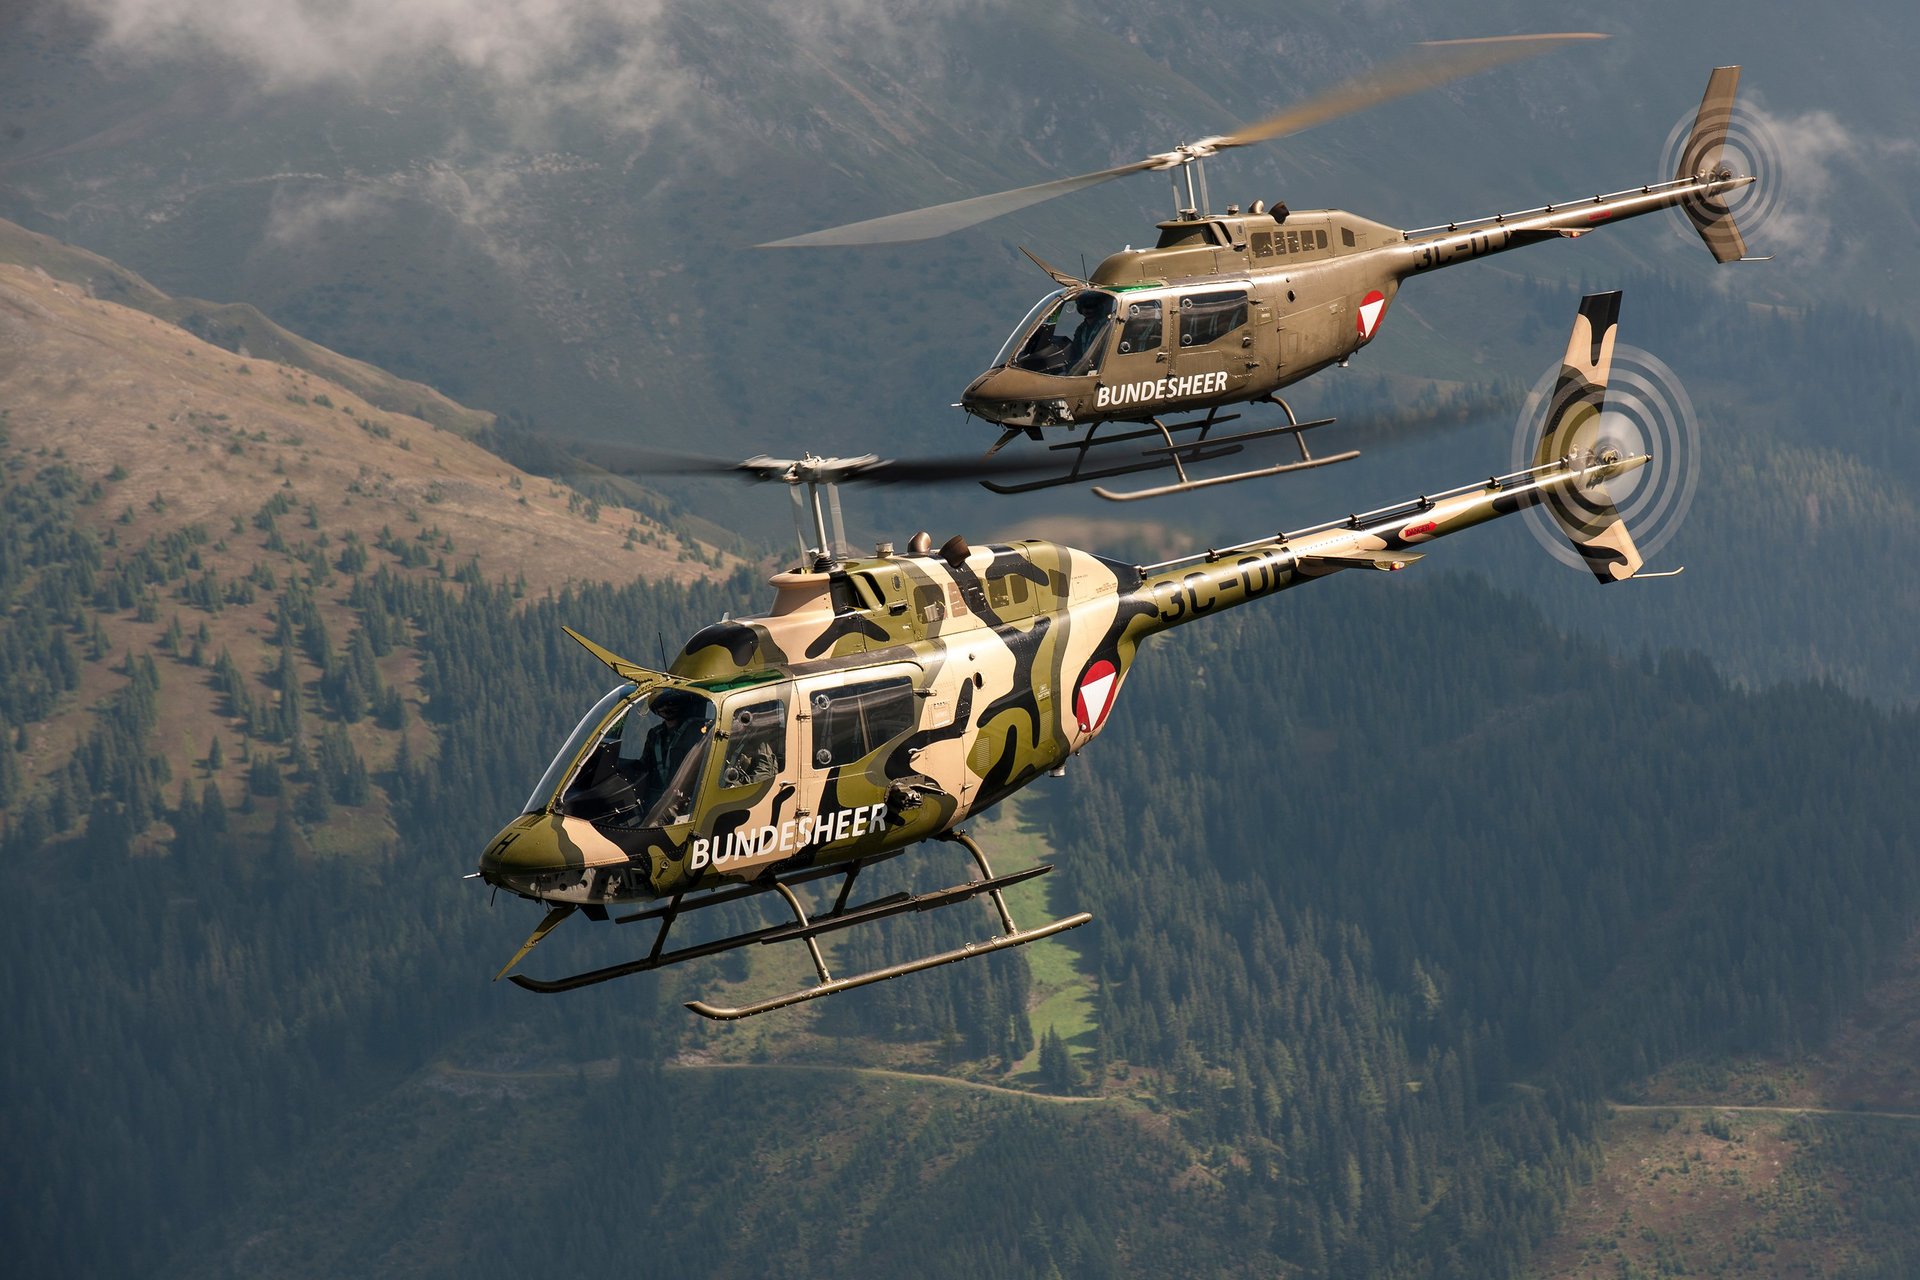 Zwei Bell OH-58 "Kiowa" im Flug, einer mit Speziallackierung.